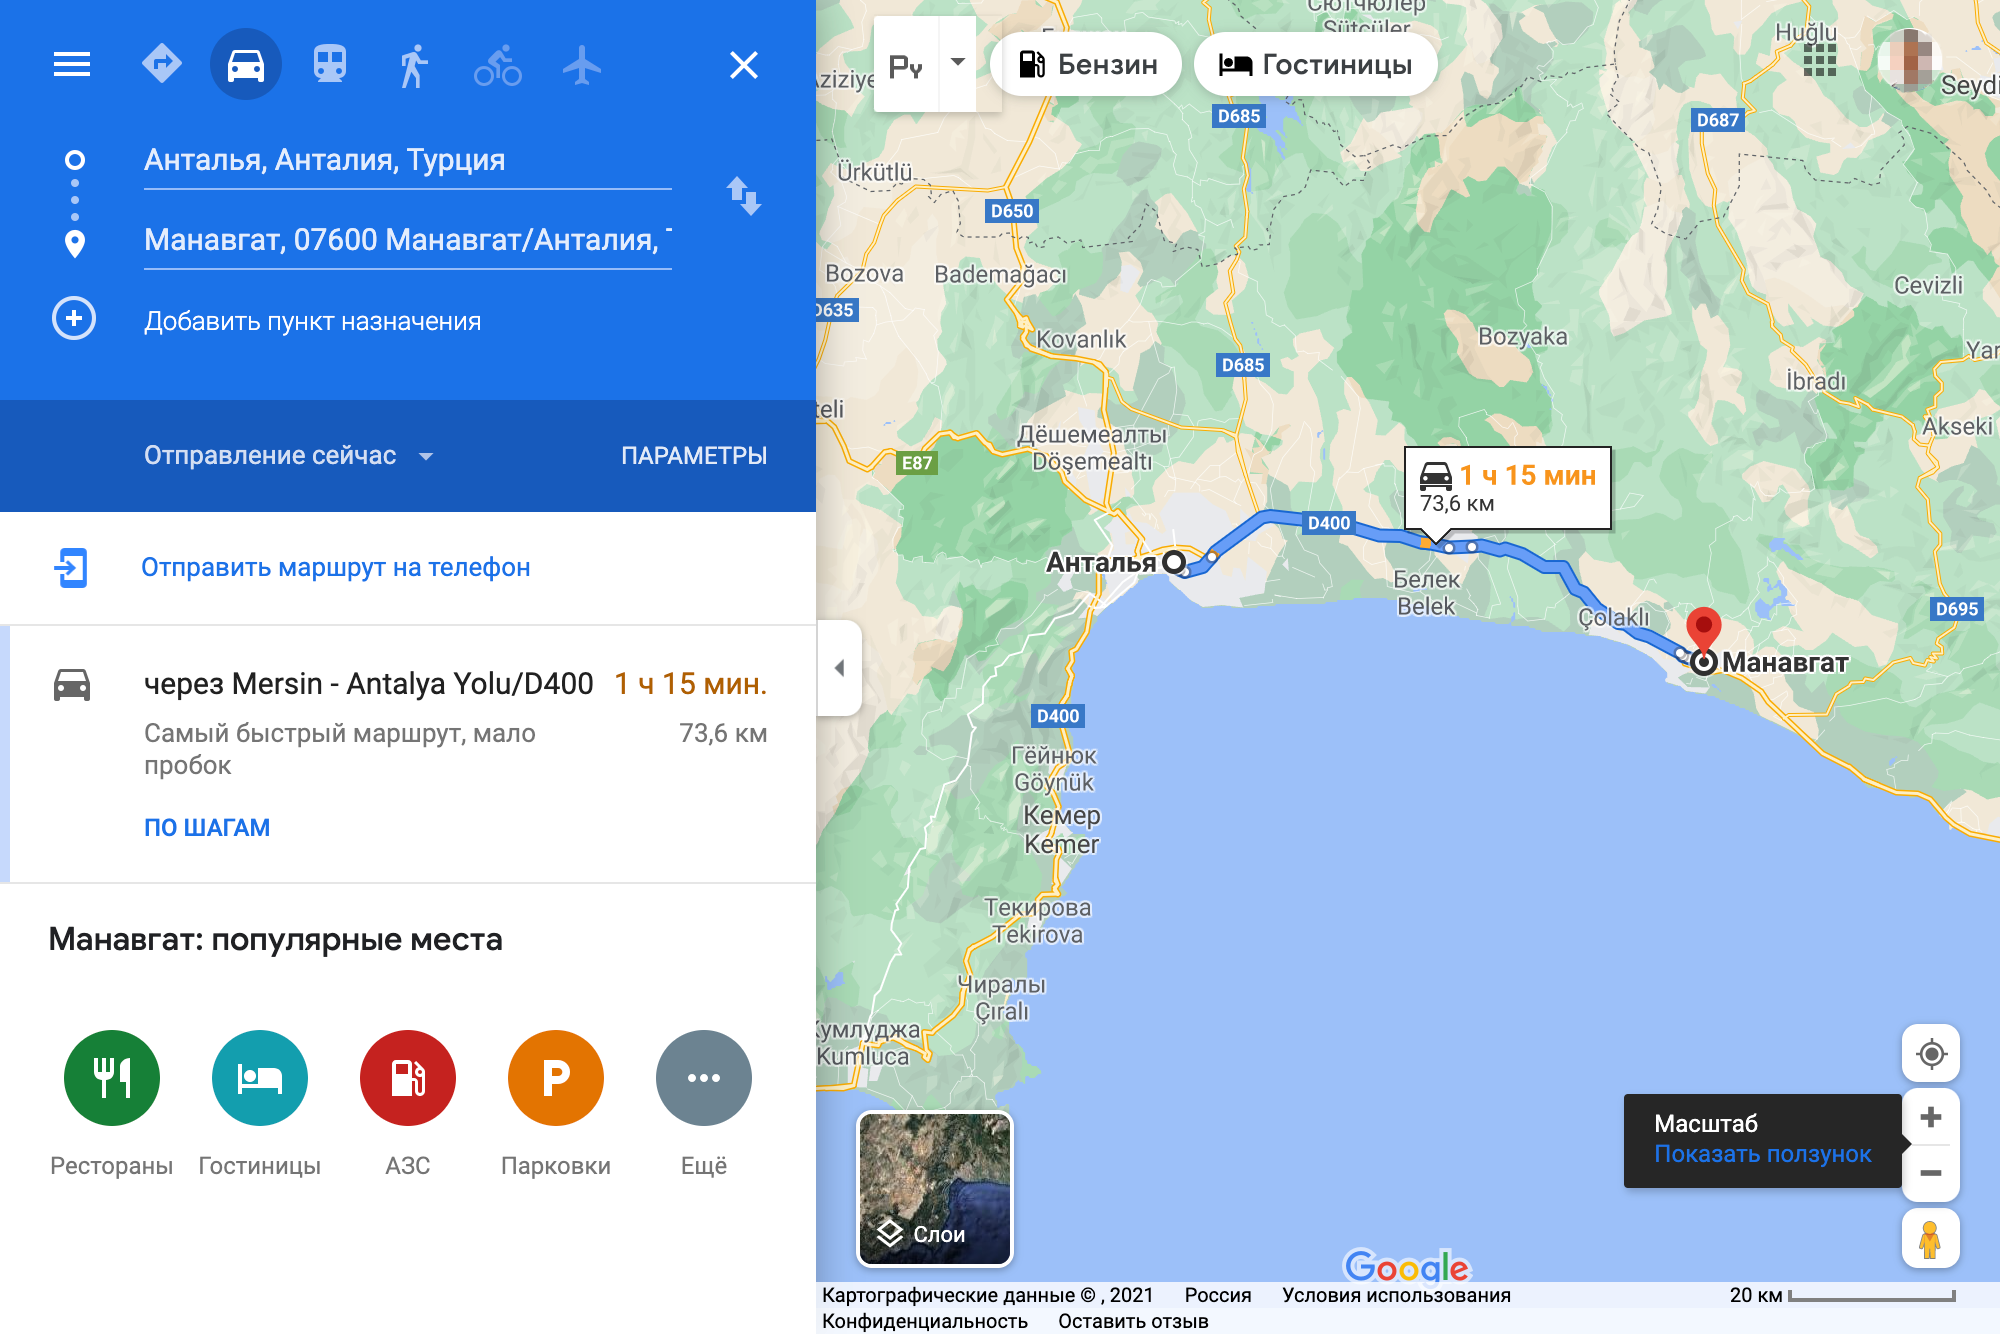 Дорога от Антальи до Манавгата занимает чуть больше часа. Трасса D400 делит Манавгат на две части. Ближе к морю — курортный туристический город, за дорогой — «настоящий турецкий». Источник: «Гугл-карты»